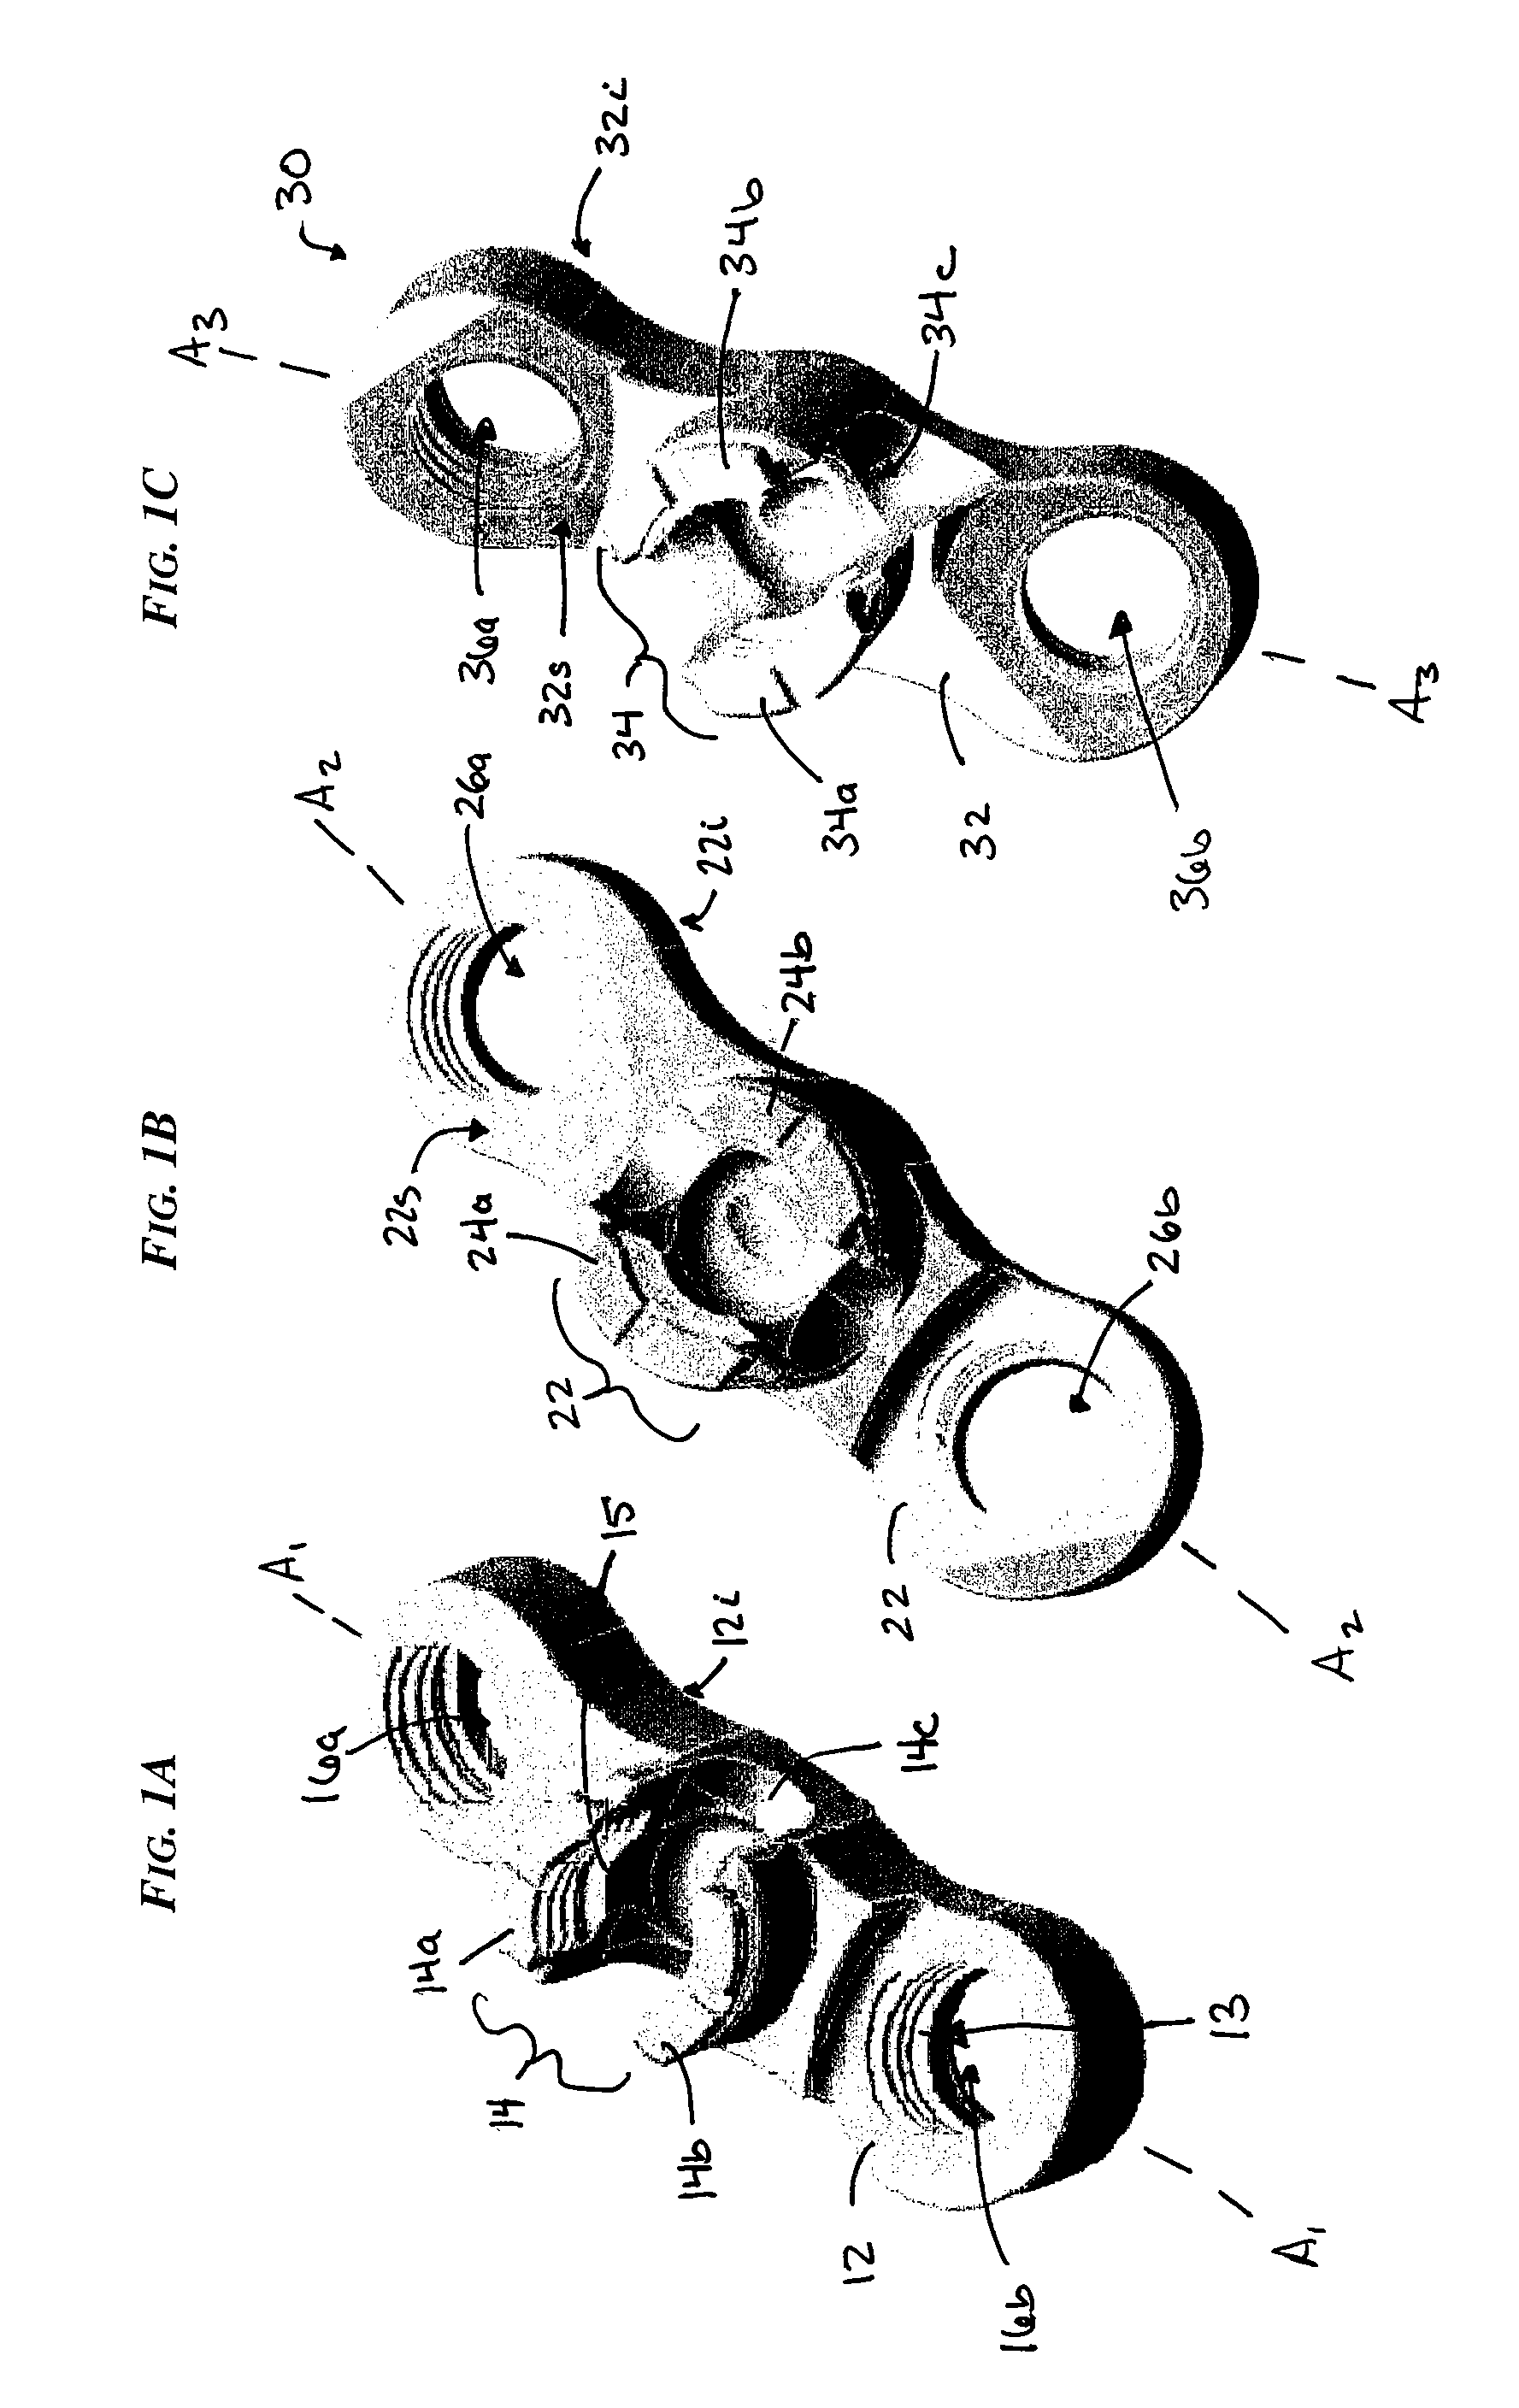 Sacral or iliac connector